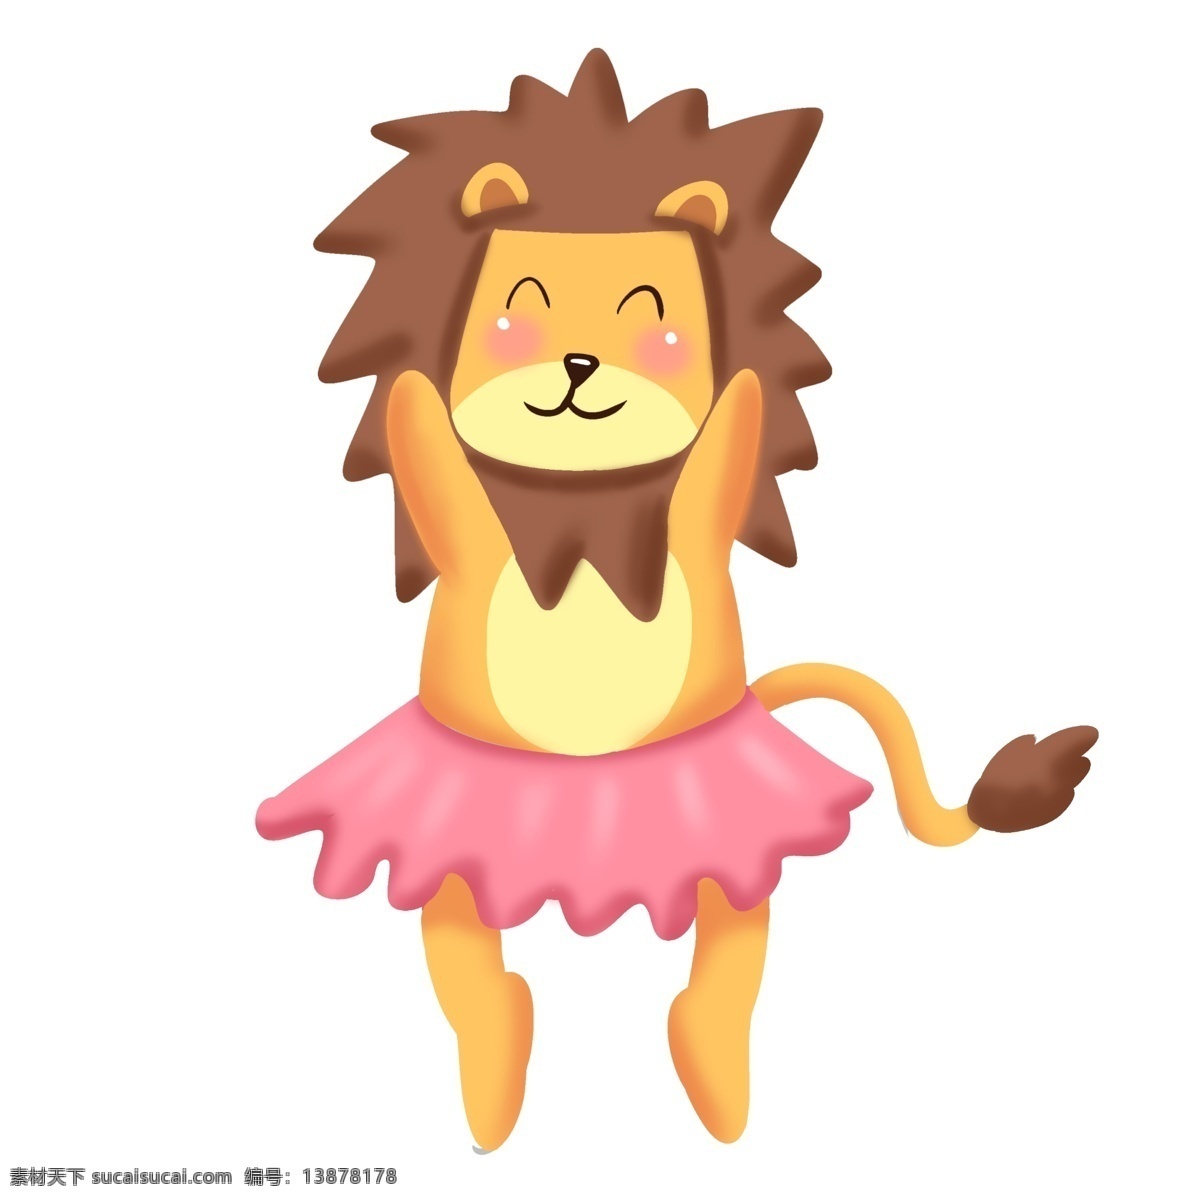 穿着 裙子 跳舞 小 狮子 红色裙子 跳舞狮子 开心的狮子 可爱的狮子 舞蹈 穿着裙子 跳舞的小狮子